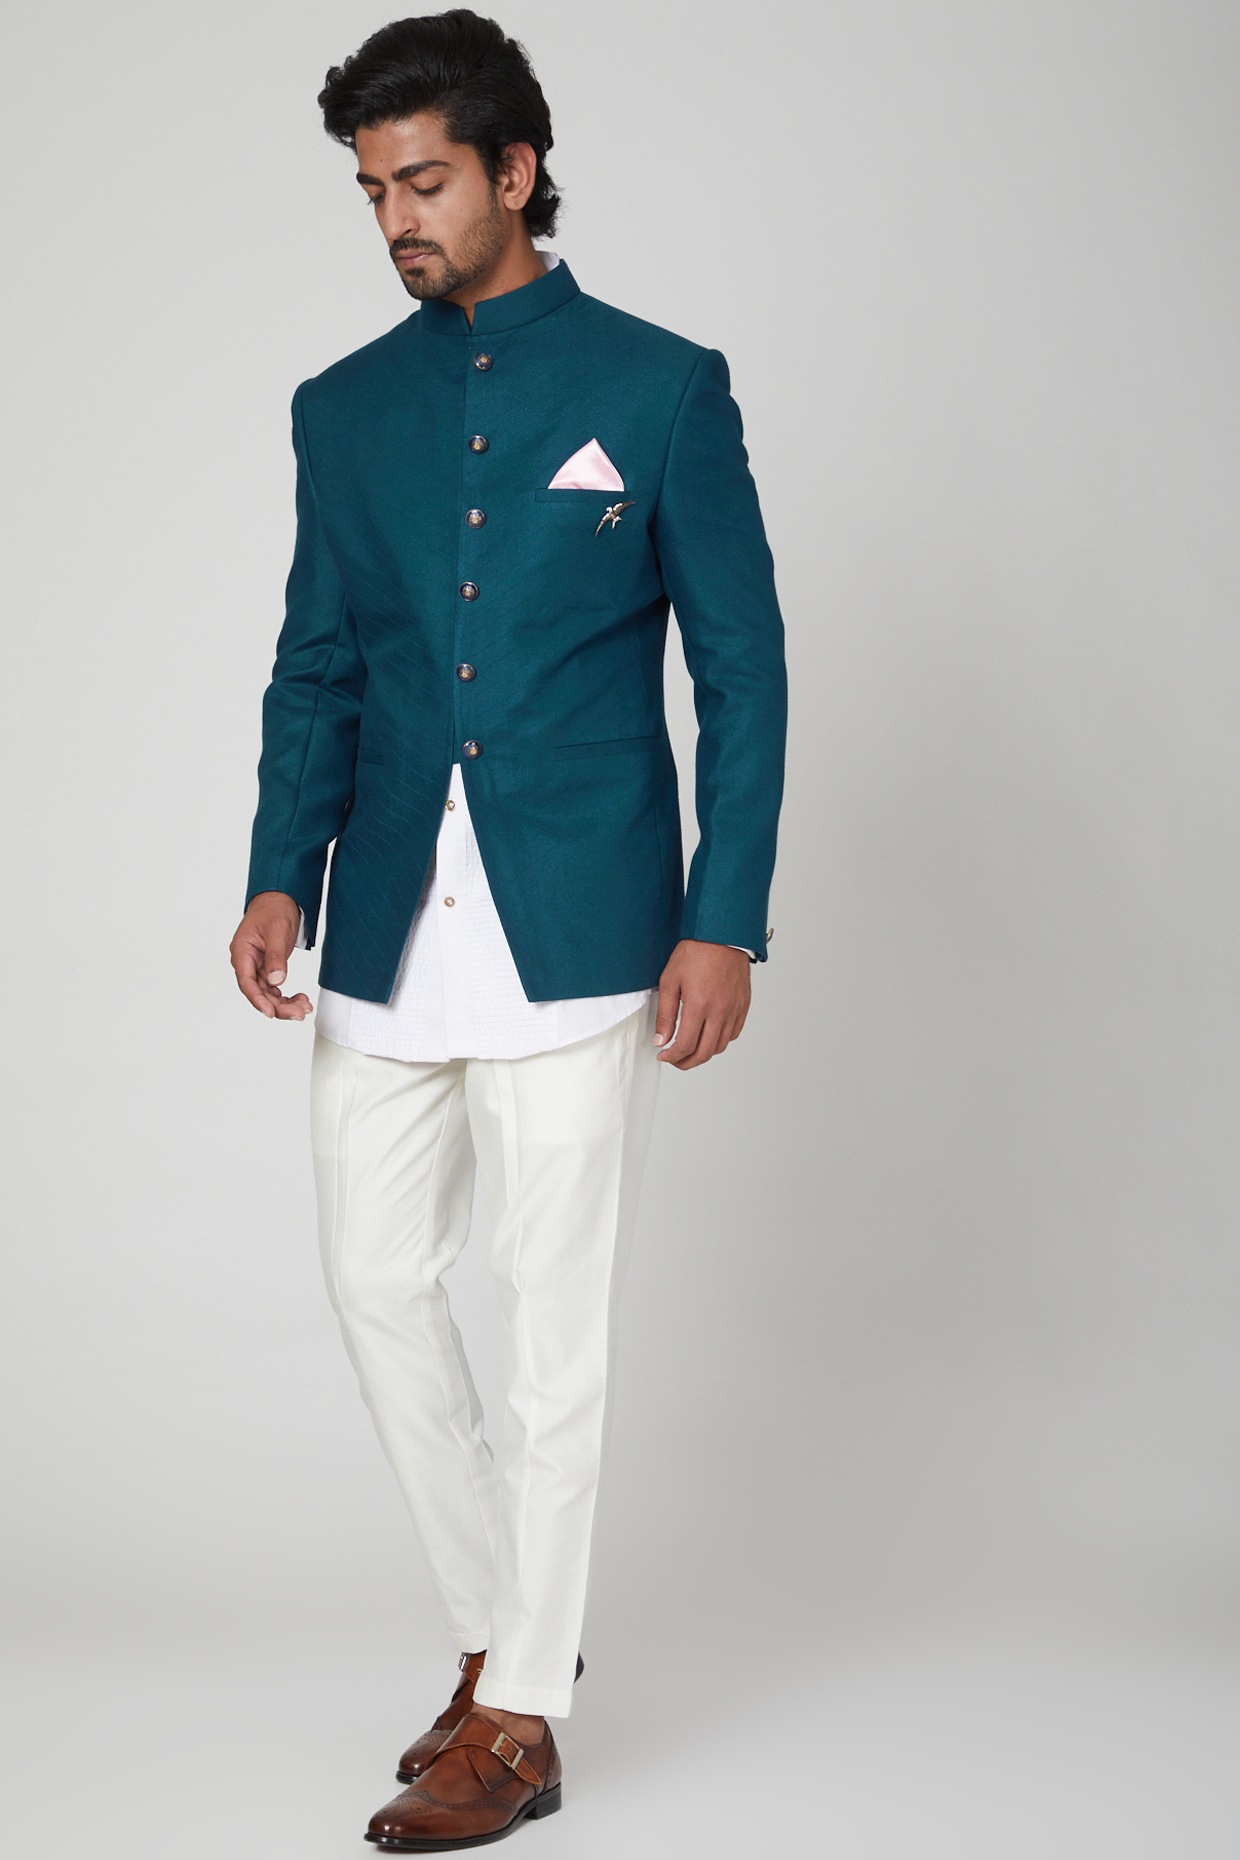 Reception Wear Art Silk Fabric Navy Blue Color Jodhpuri Suit